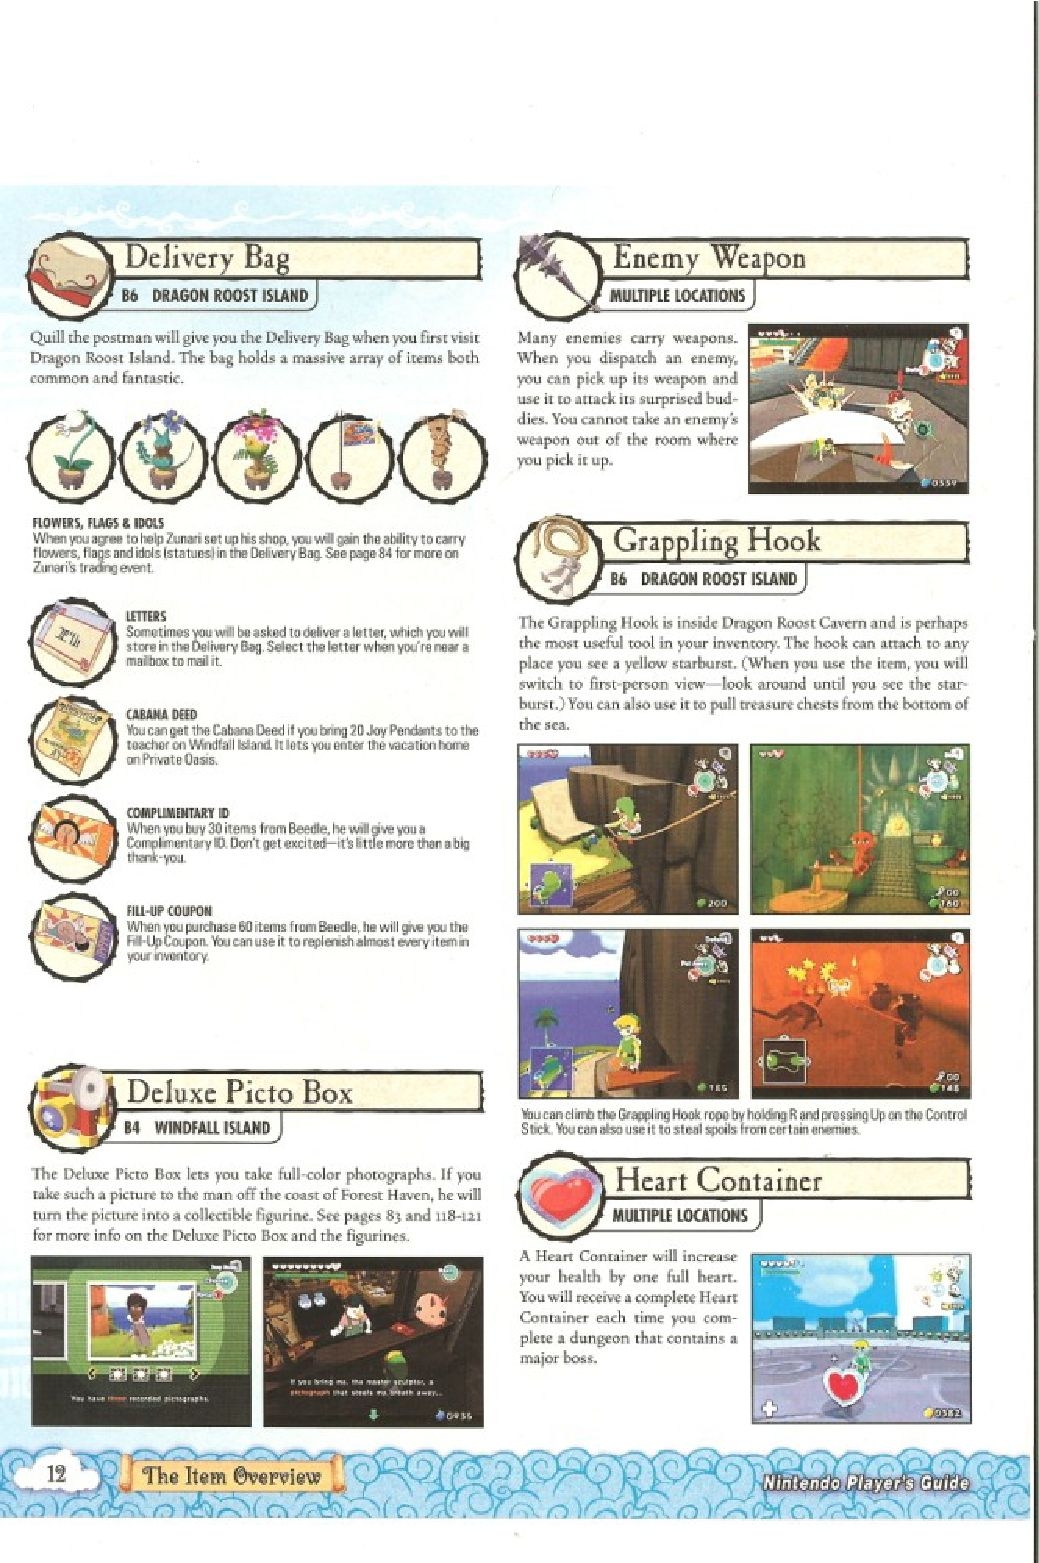 The Legend of Zelda - wind waker - Strategy Guide 13